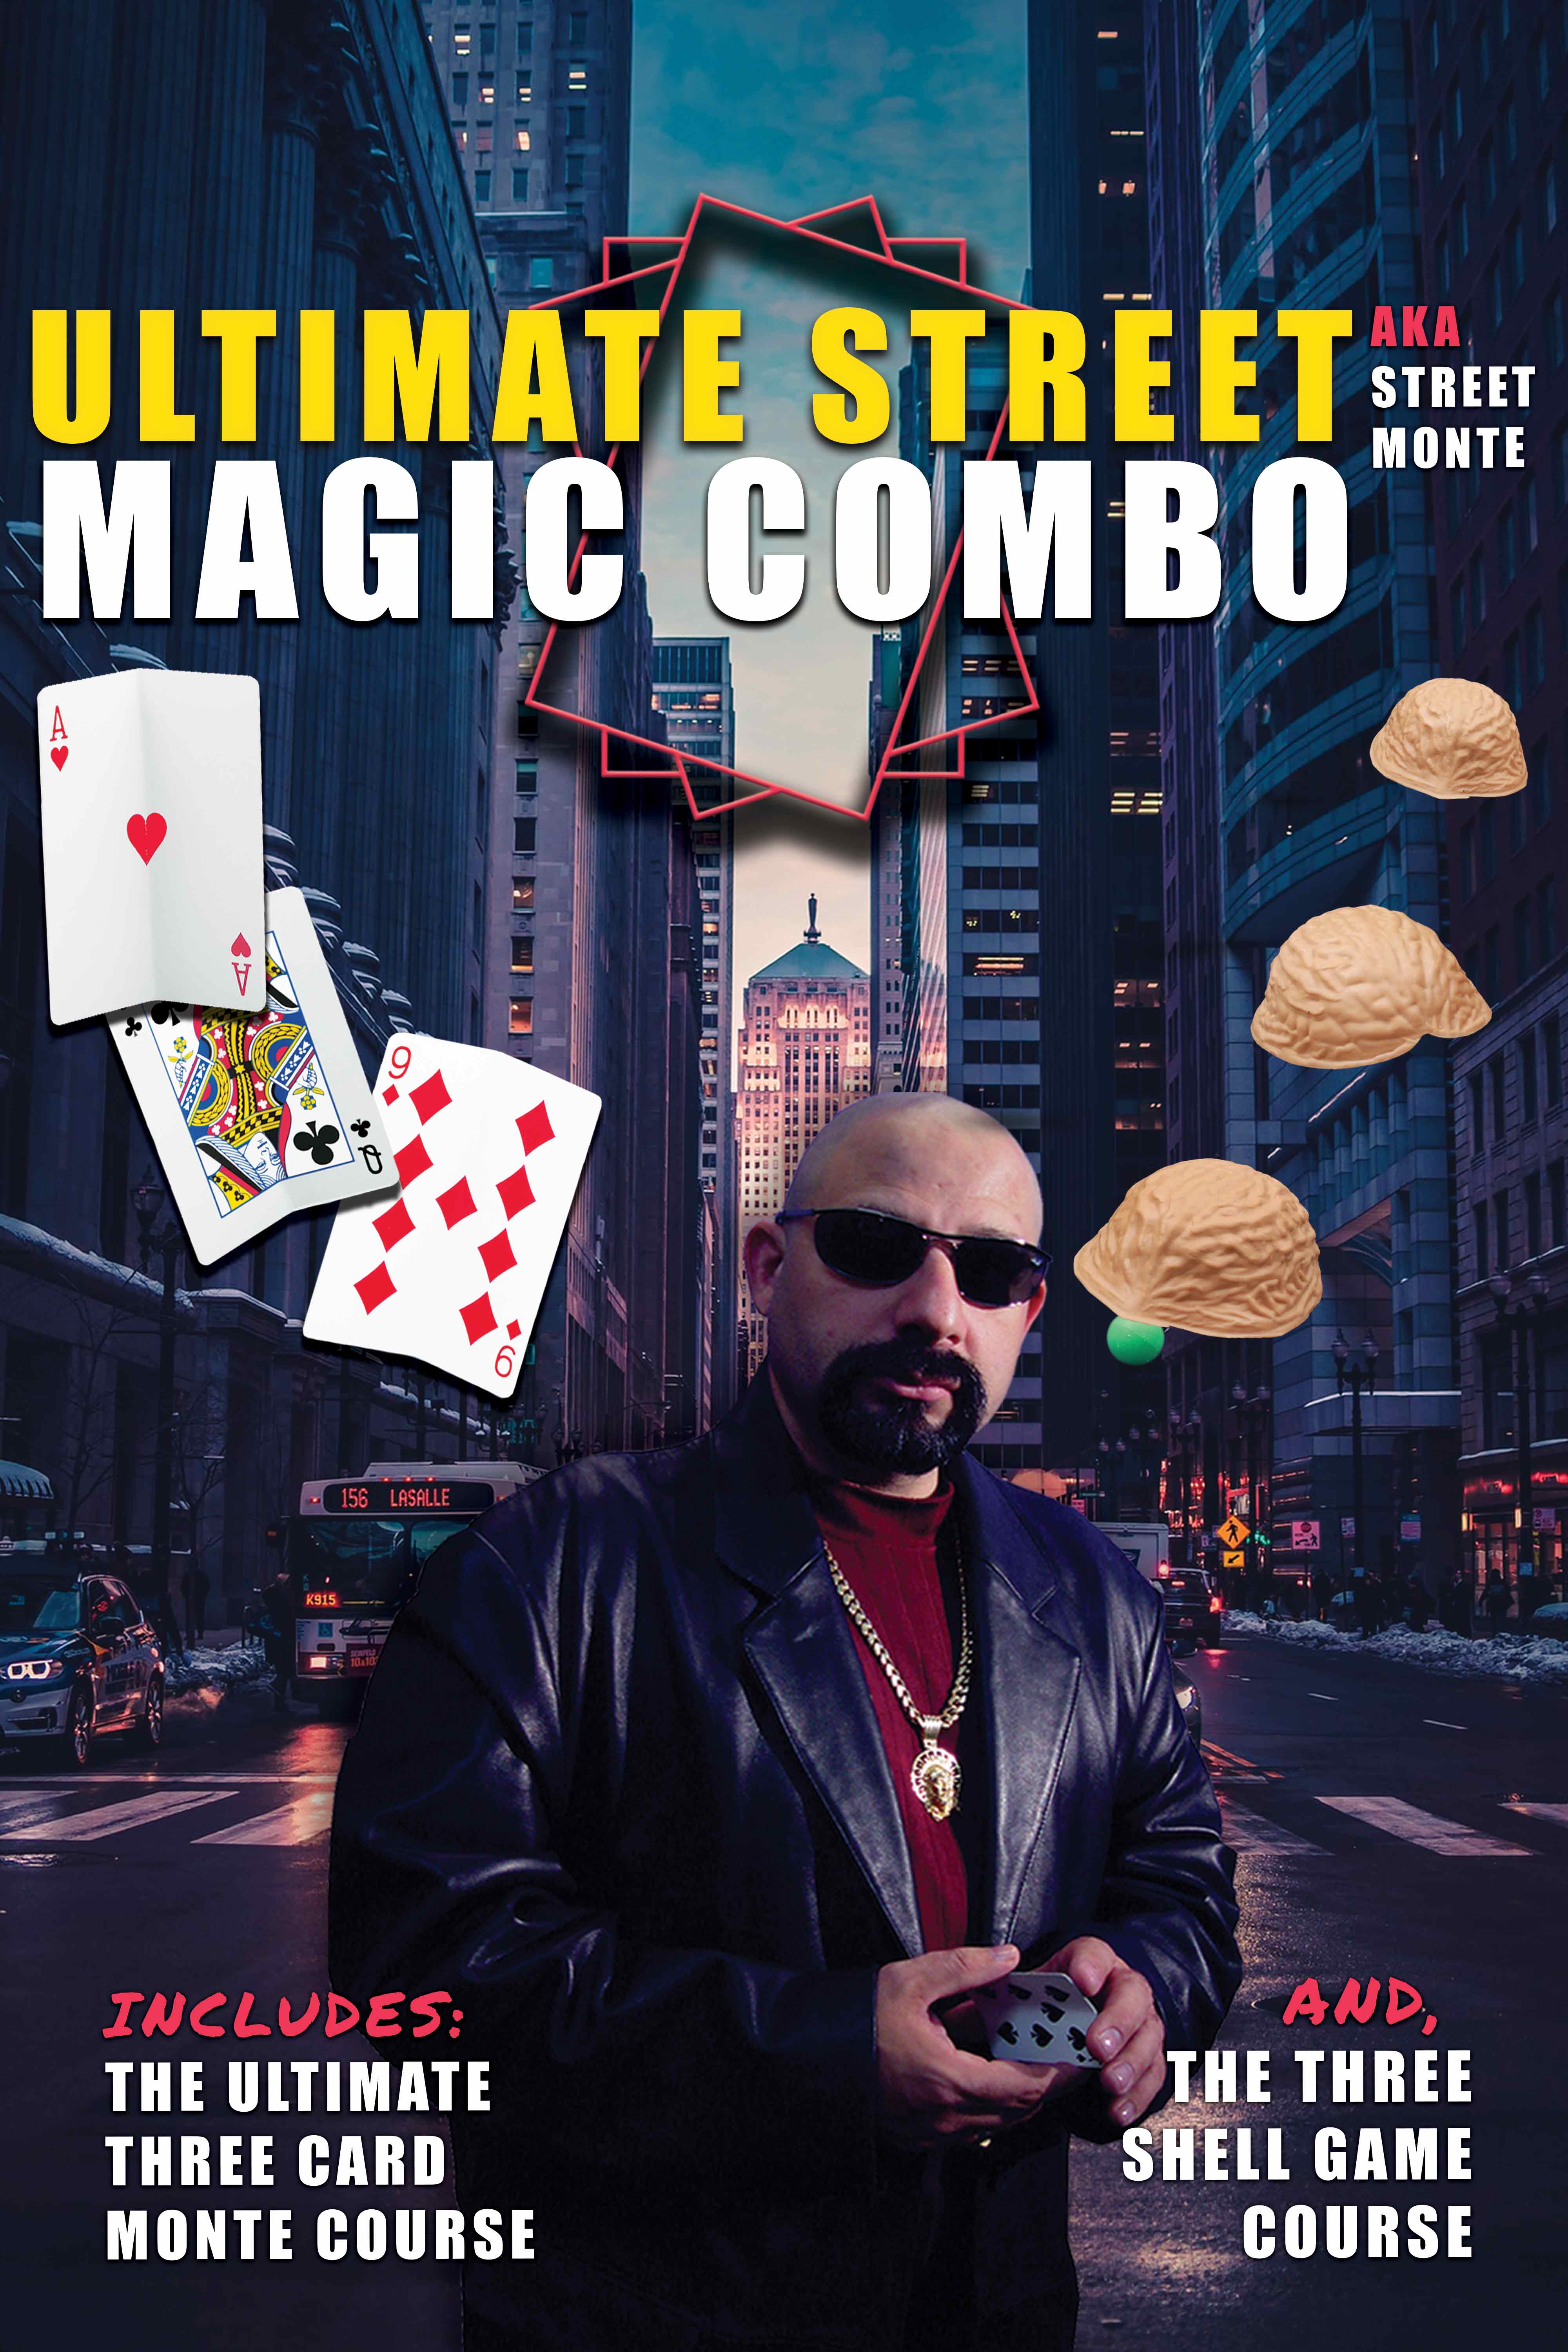 download mastermagic magic kit